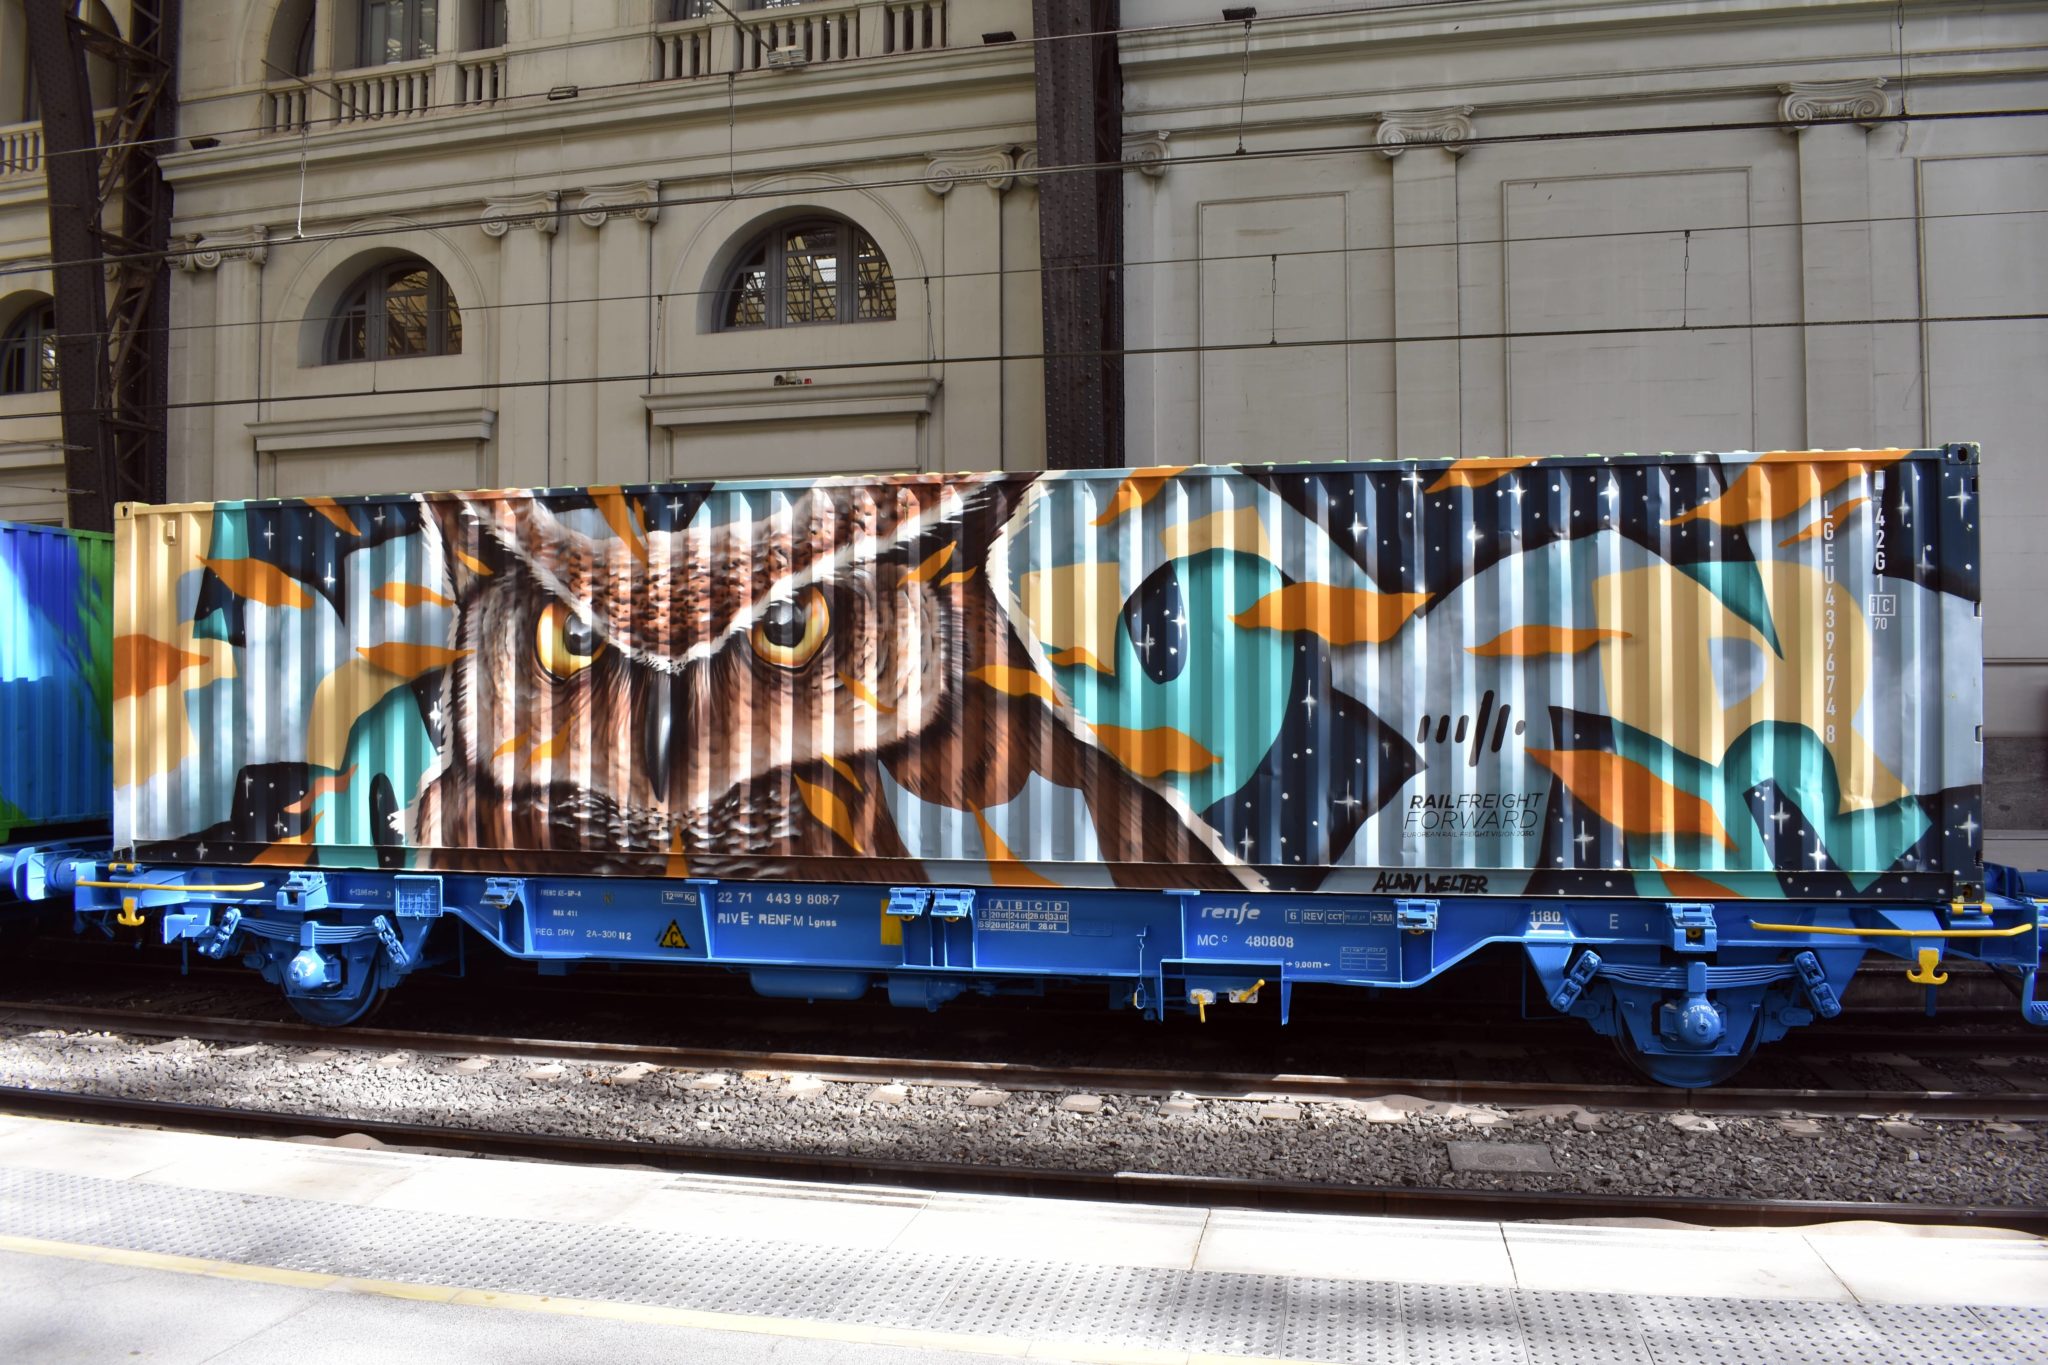 Alain Welter Noah's train Street art